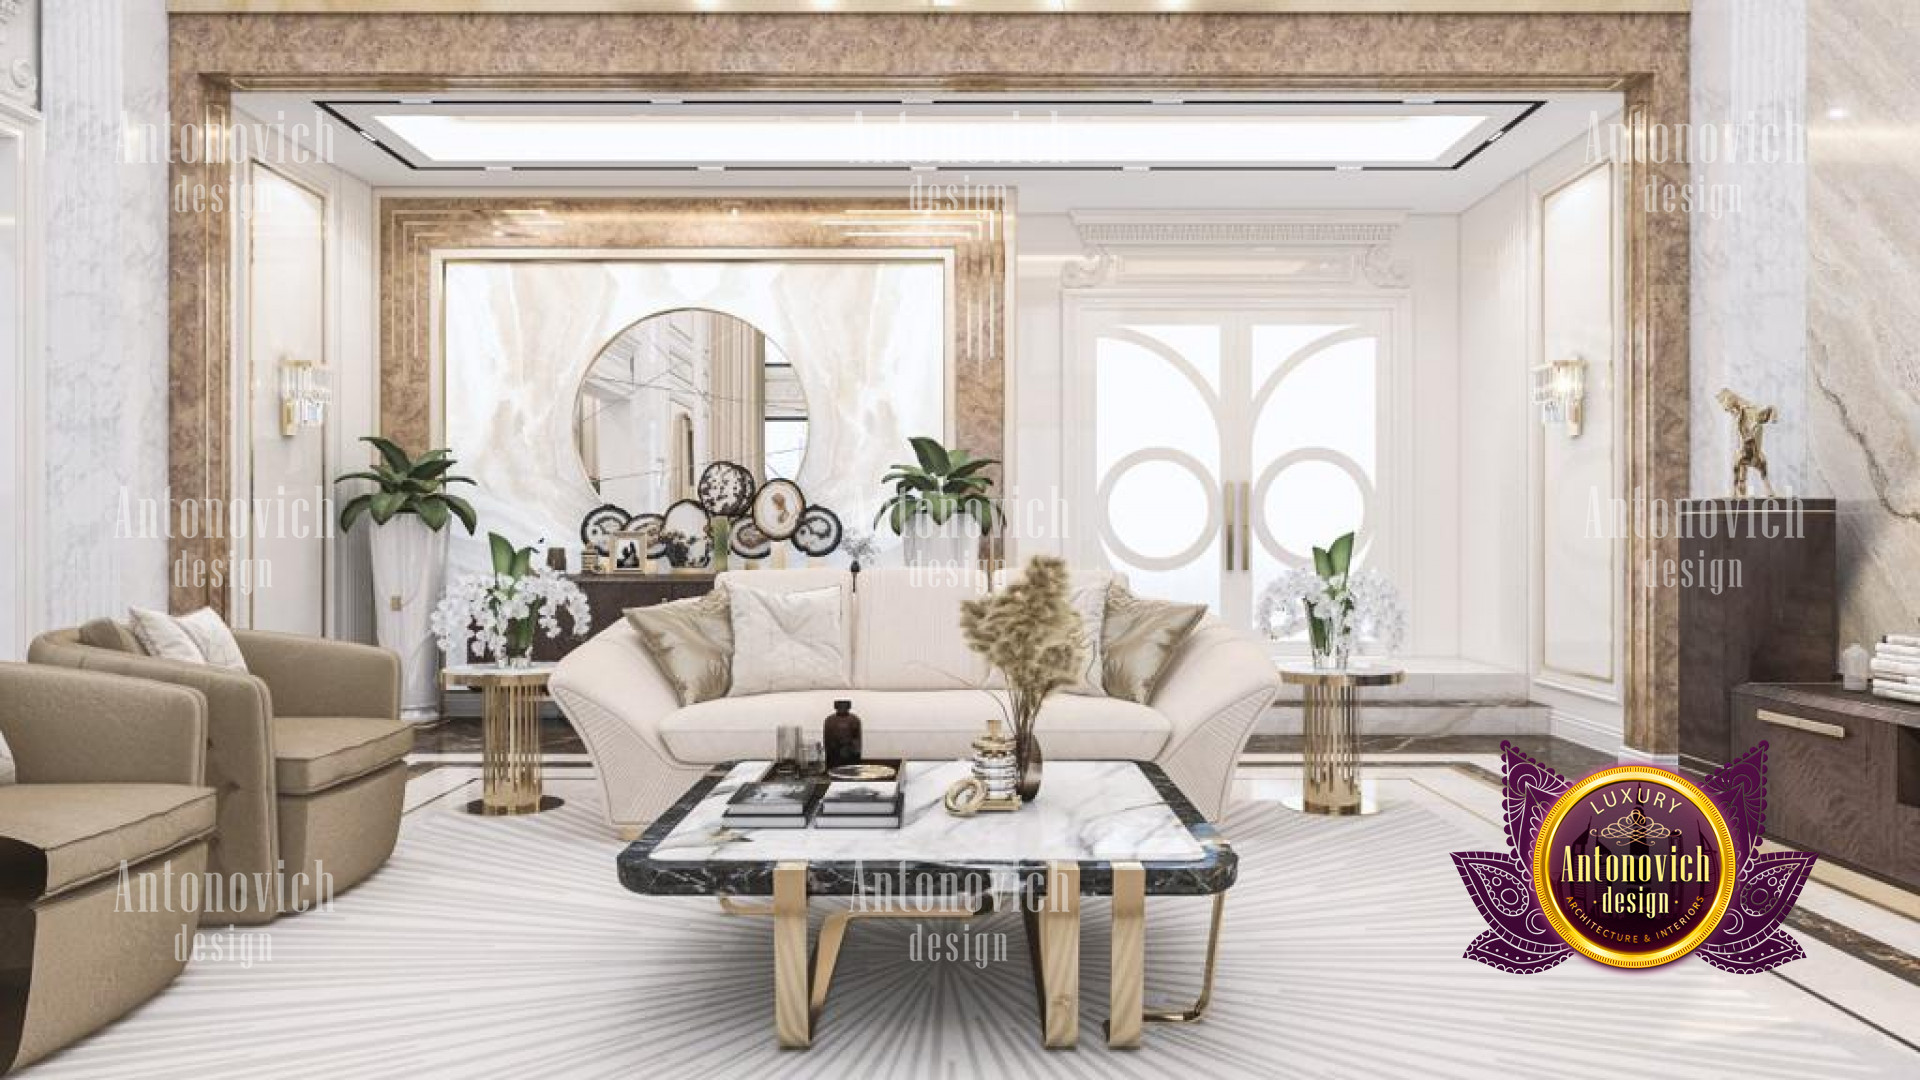 Living Room Design For 22 Carat Villa Design The Palm